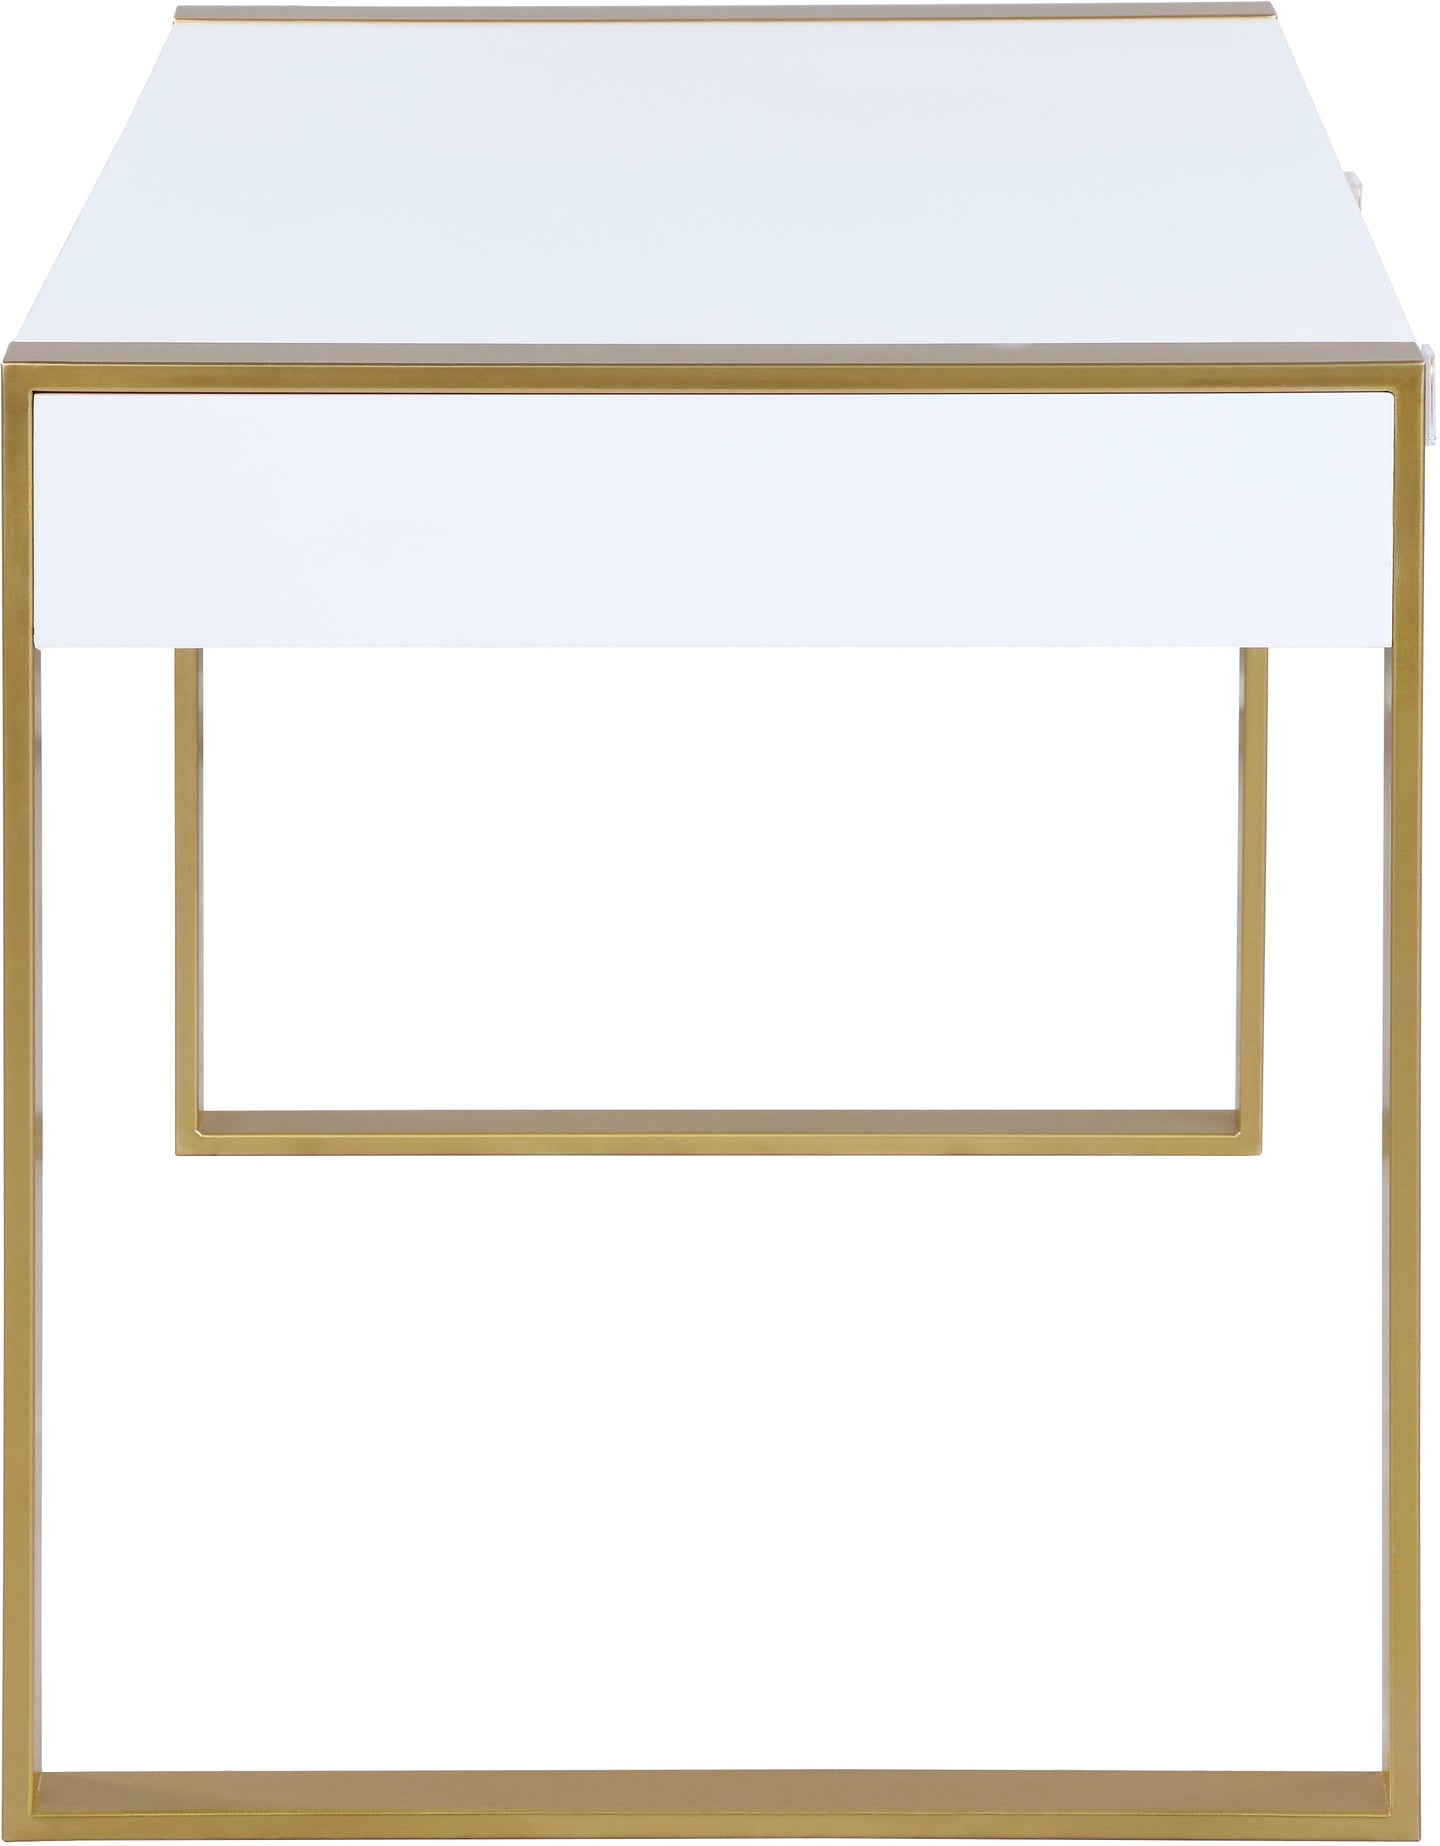 Victoria White / Gold Desk/Console - Furniture Depot (7679000903928)